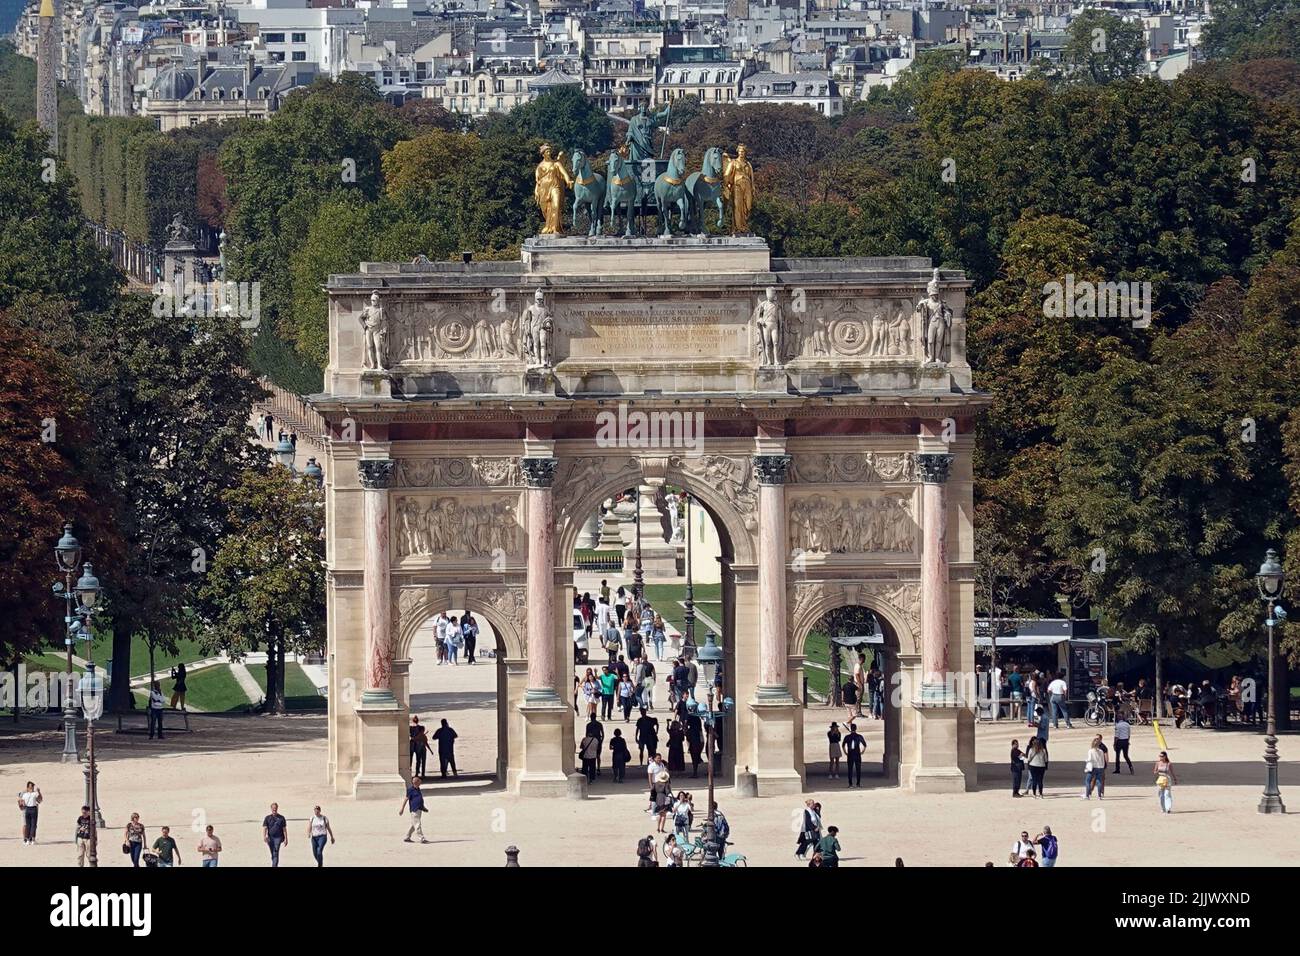 France, Paris, l'Arc de Triomphe du carrousel est une arche triomphale de Paris, située sur la place du carrousel. C'est un exemple d'arche néoclassique Banque D'Images